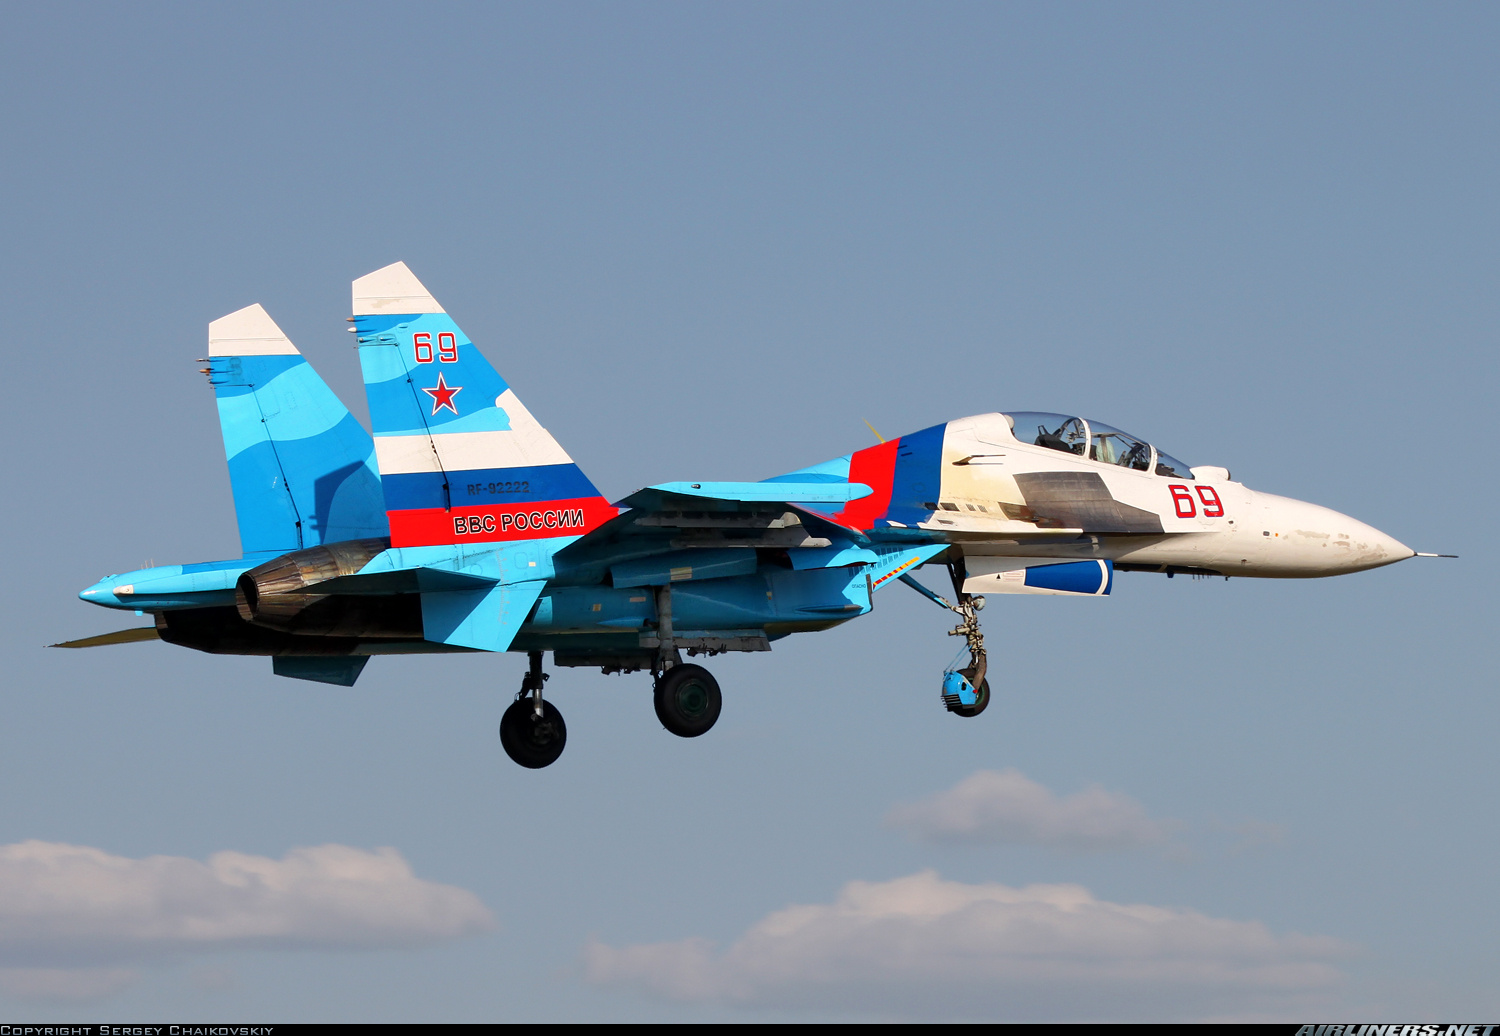 Sukhoi Su-30 Backgrounds, Compatible - PC, Mobile, Gadgets| 1500x1036 px